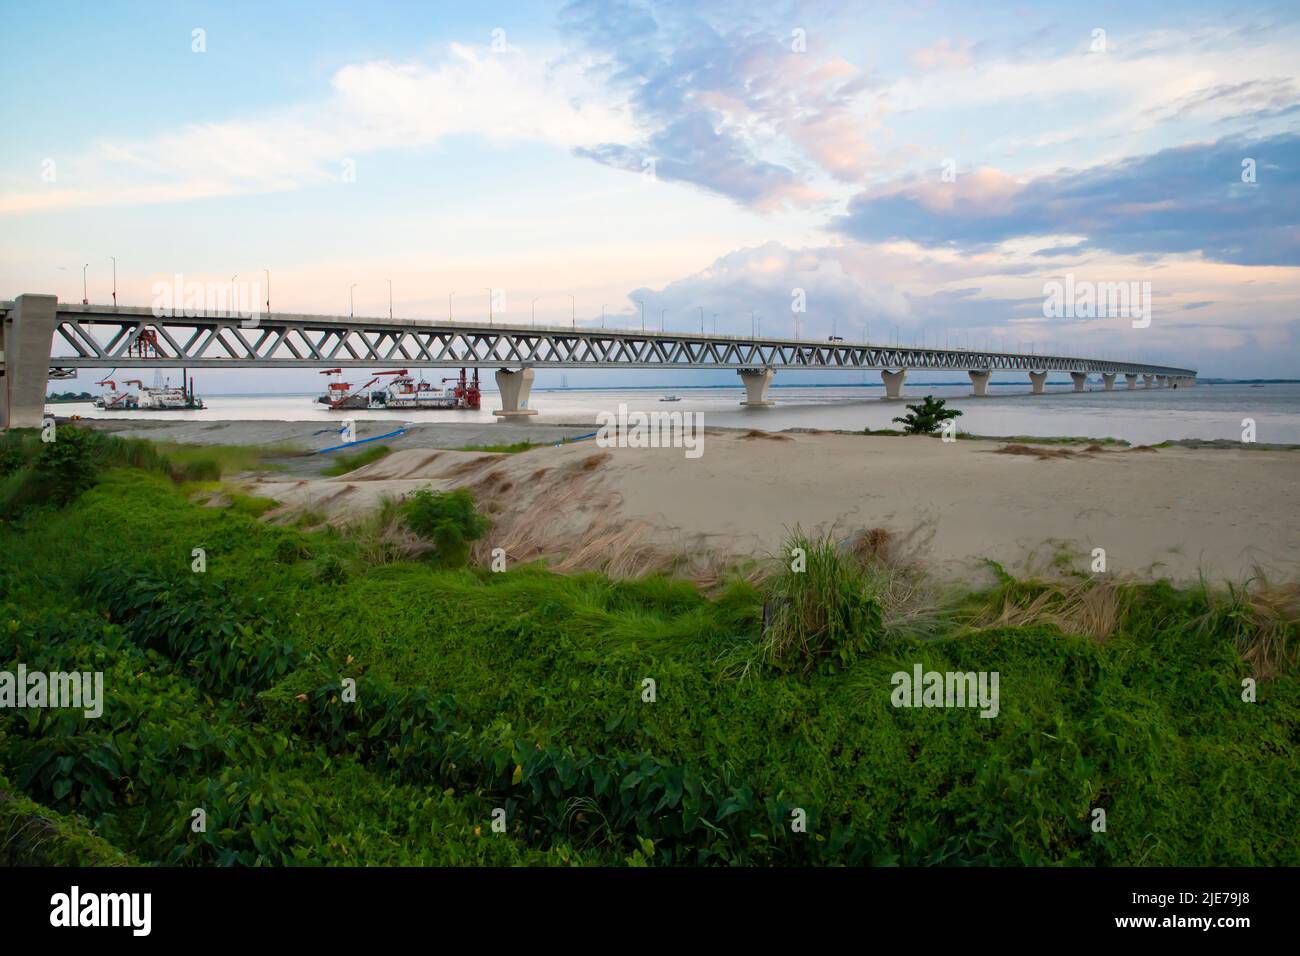 Padma Mehrzweckbrücke am Padma Fluss in Bangladesch. Diese Brücke wurde am 25. Juni 2022 in Bangladesch eingeweiht Stockfoto